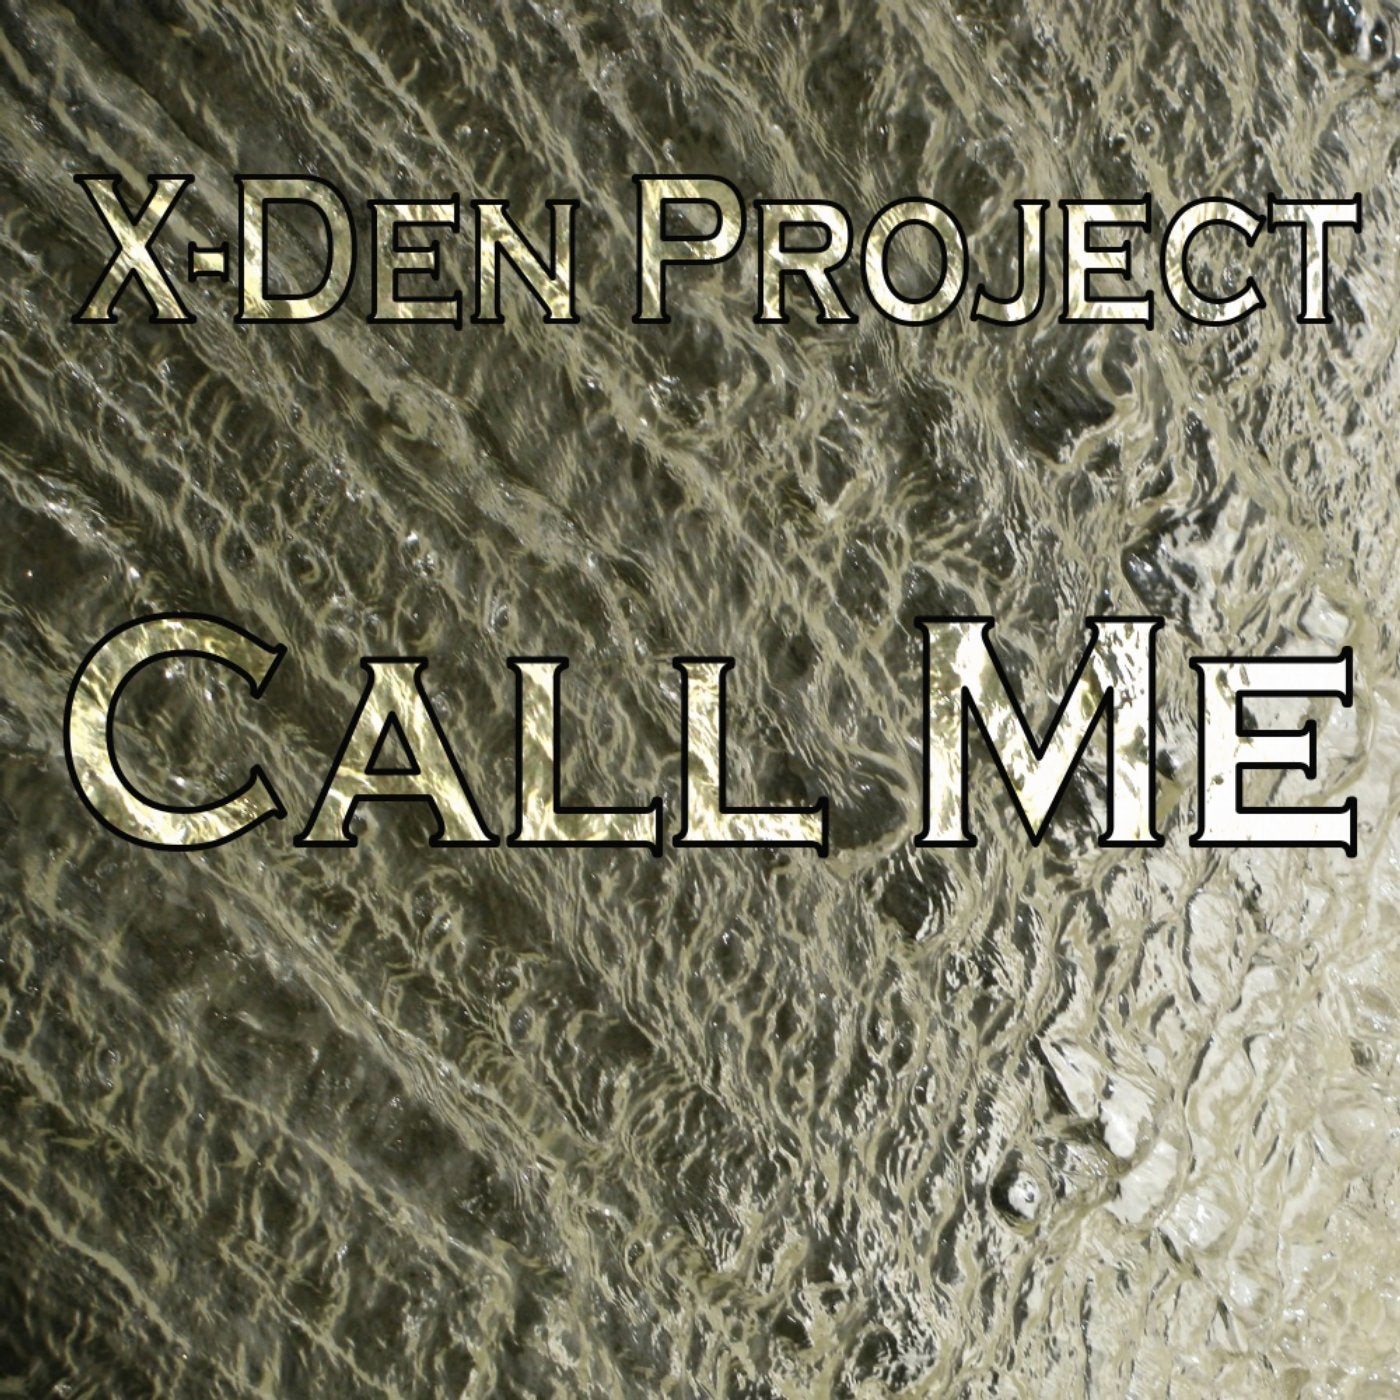 Call Me